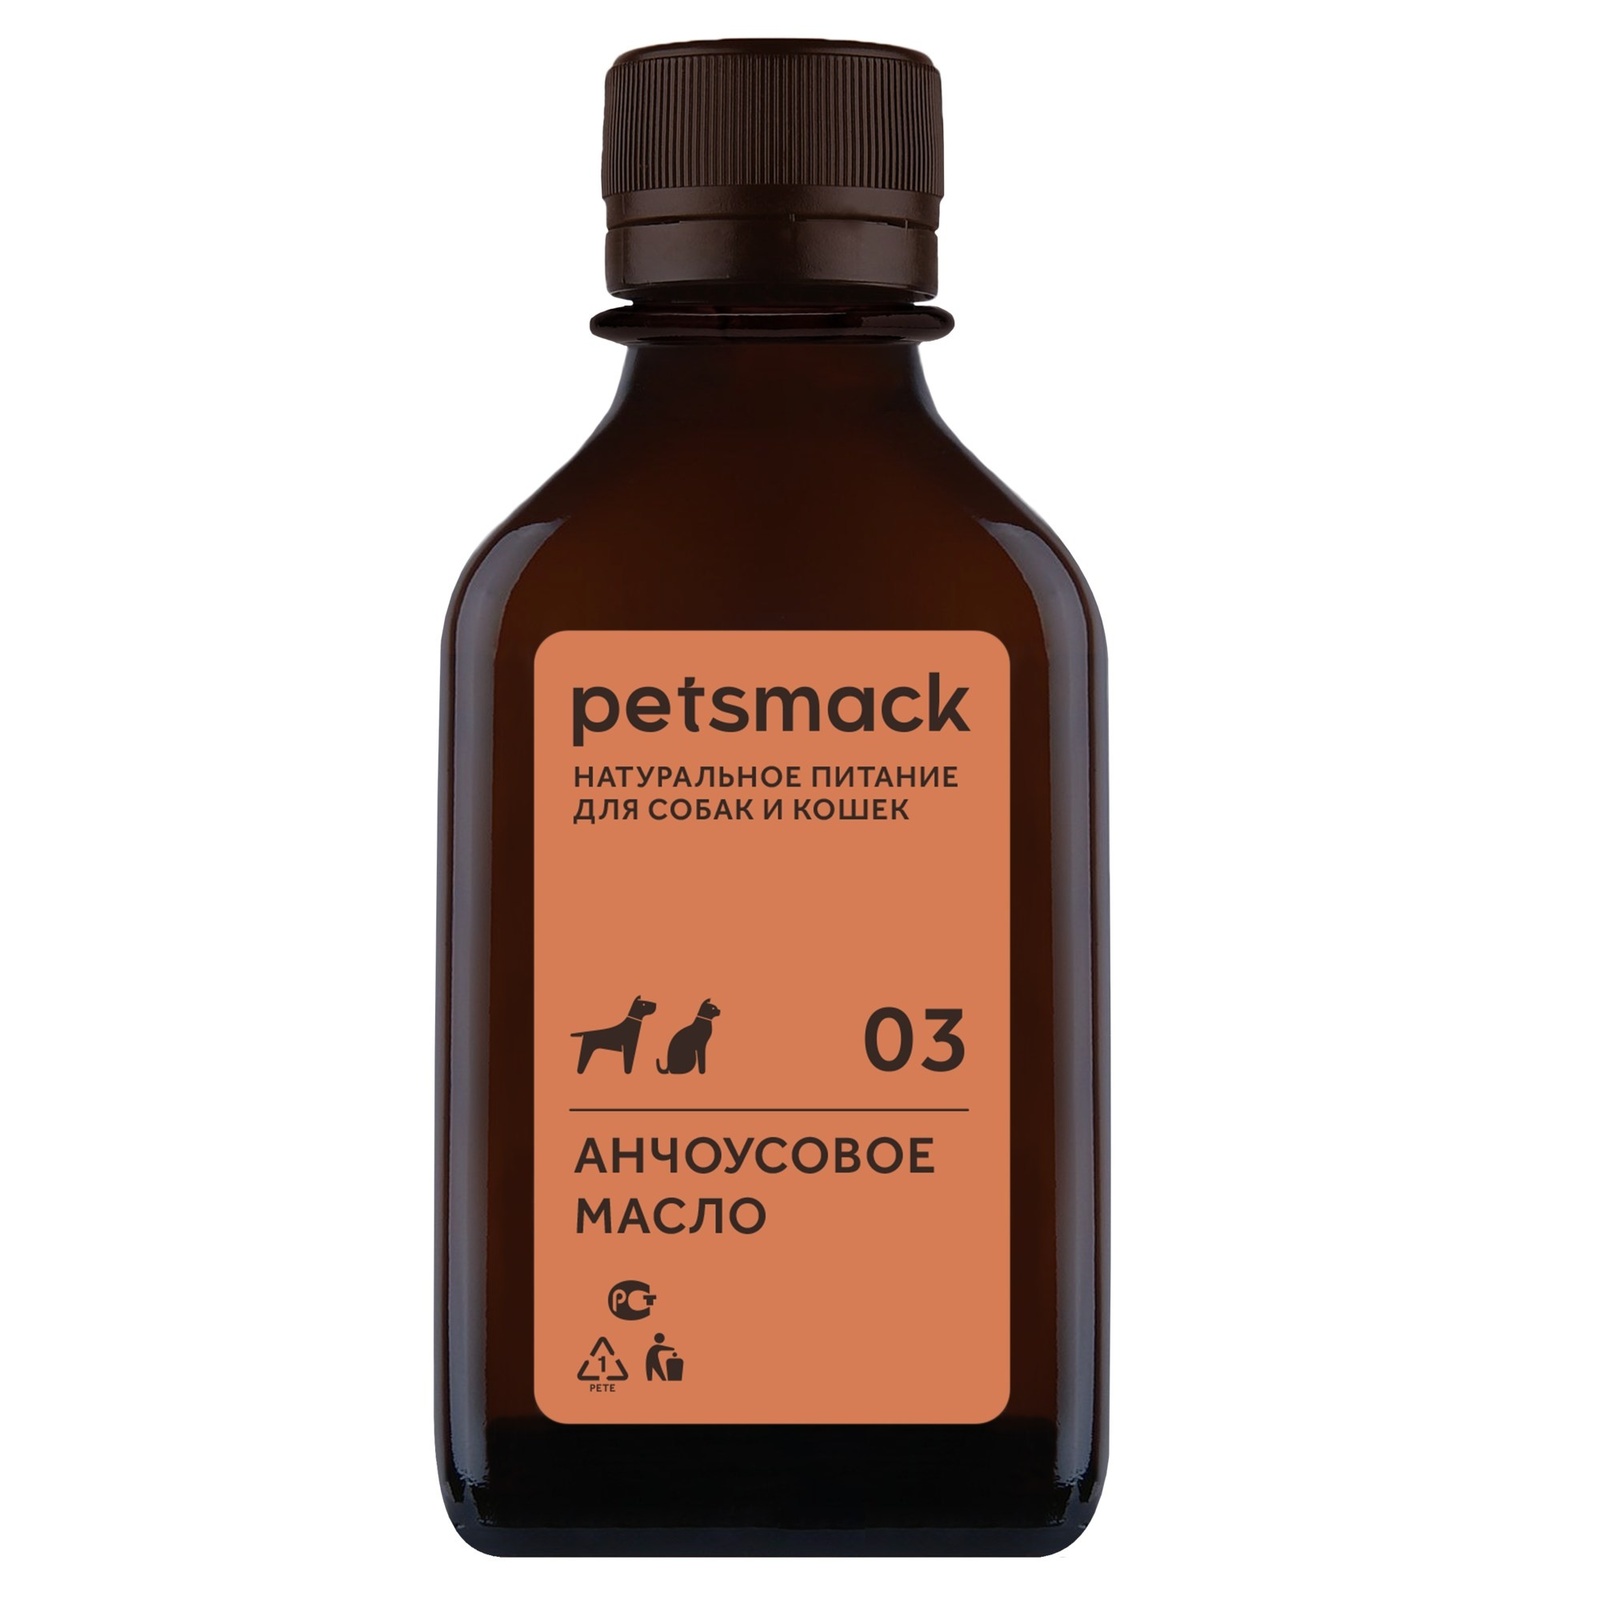 Petsmack лакомства Petsmack лакомства масло анчоуса (250 г) petsmack petsmack бульон из индейки 260 г